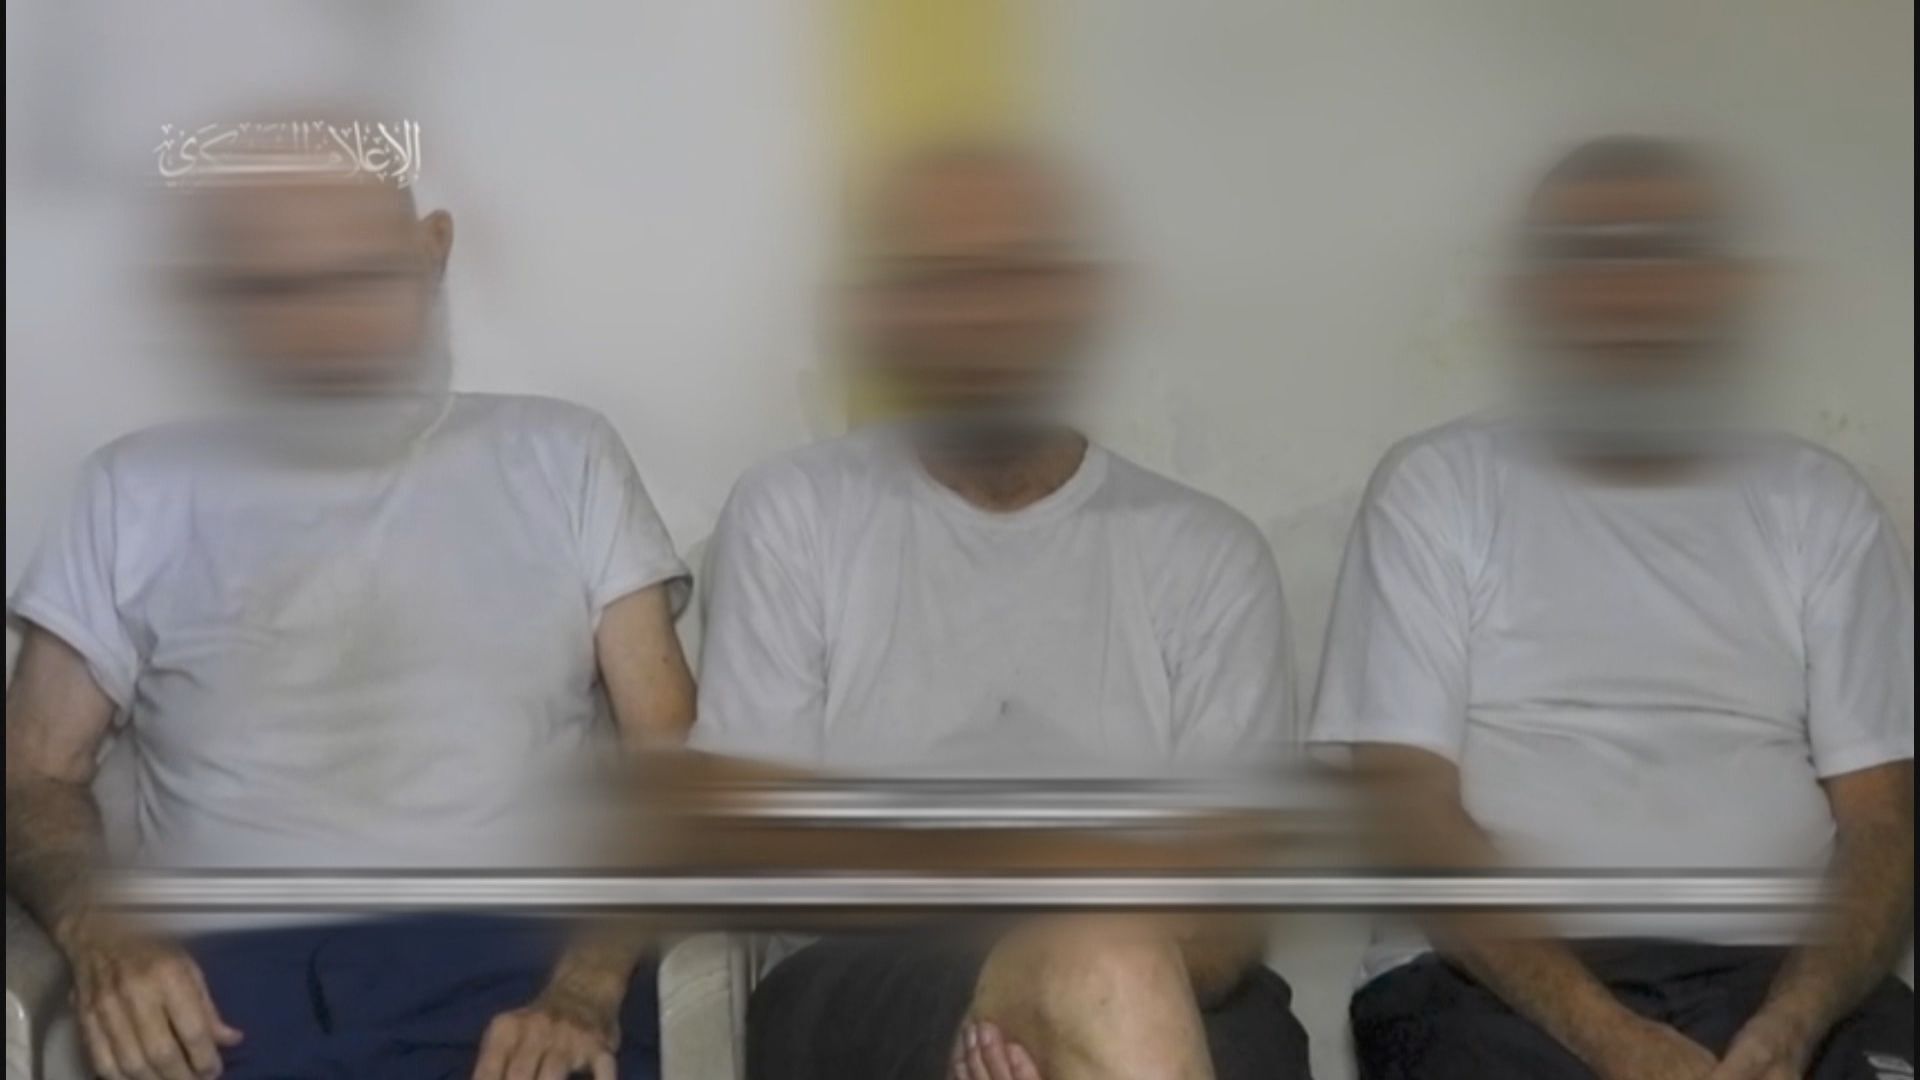 Film Hamasu pokazuje starszych izraelskich więźniów błagających o uwolnienie |  Wiadomości na temat konfliktu izraelsko-palestyńskiego